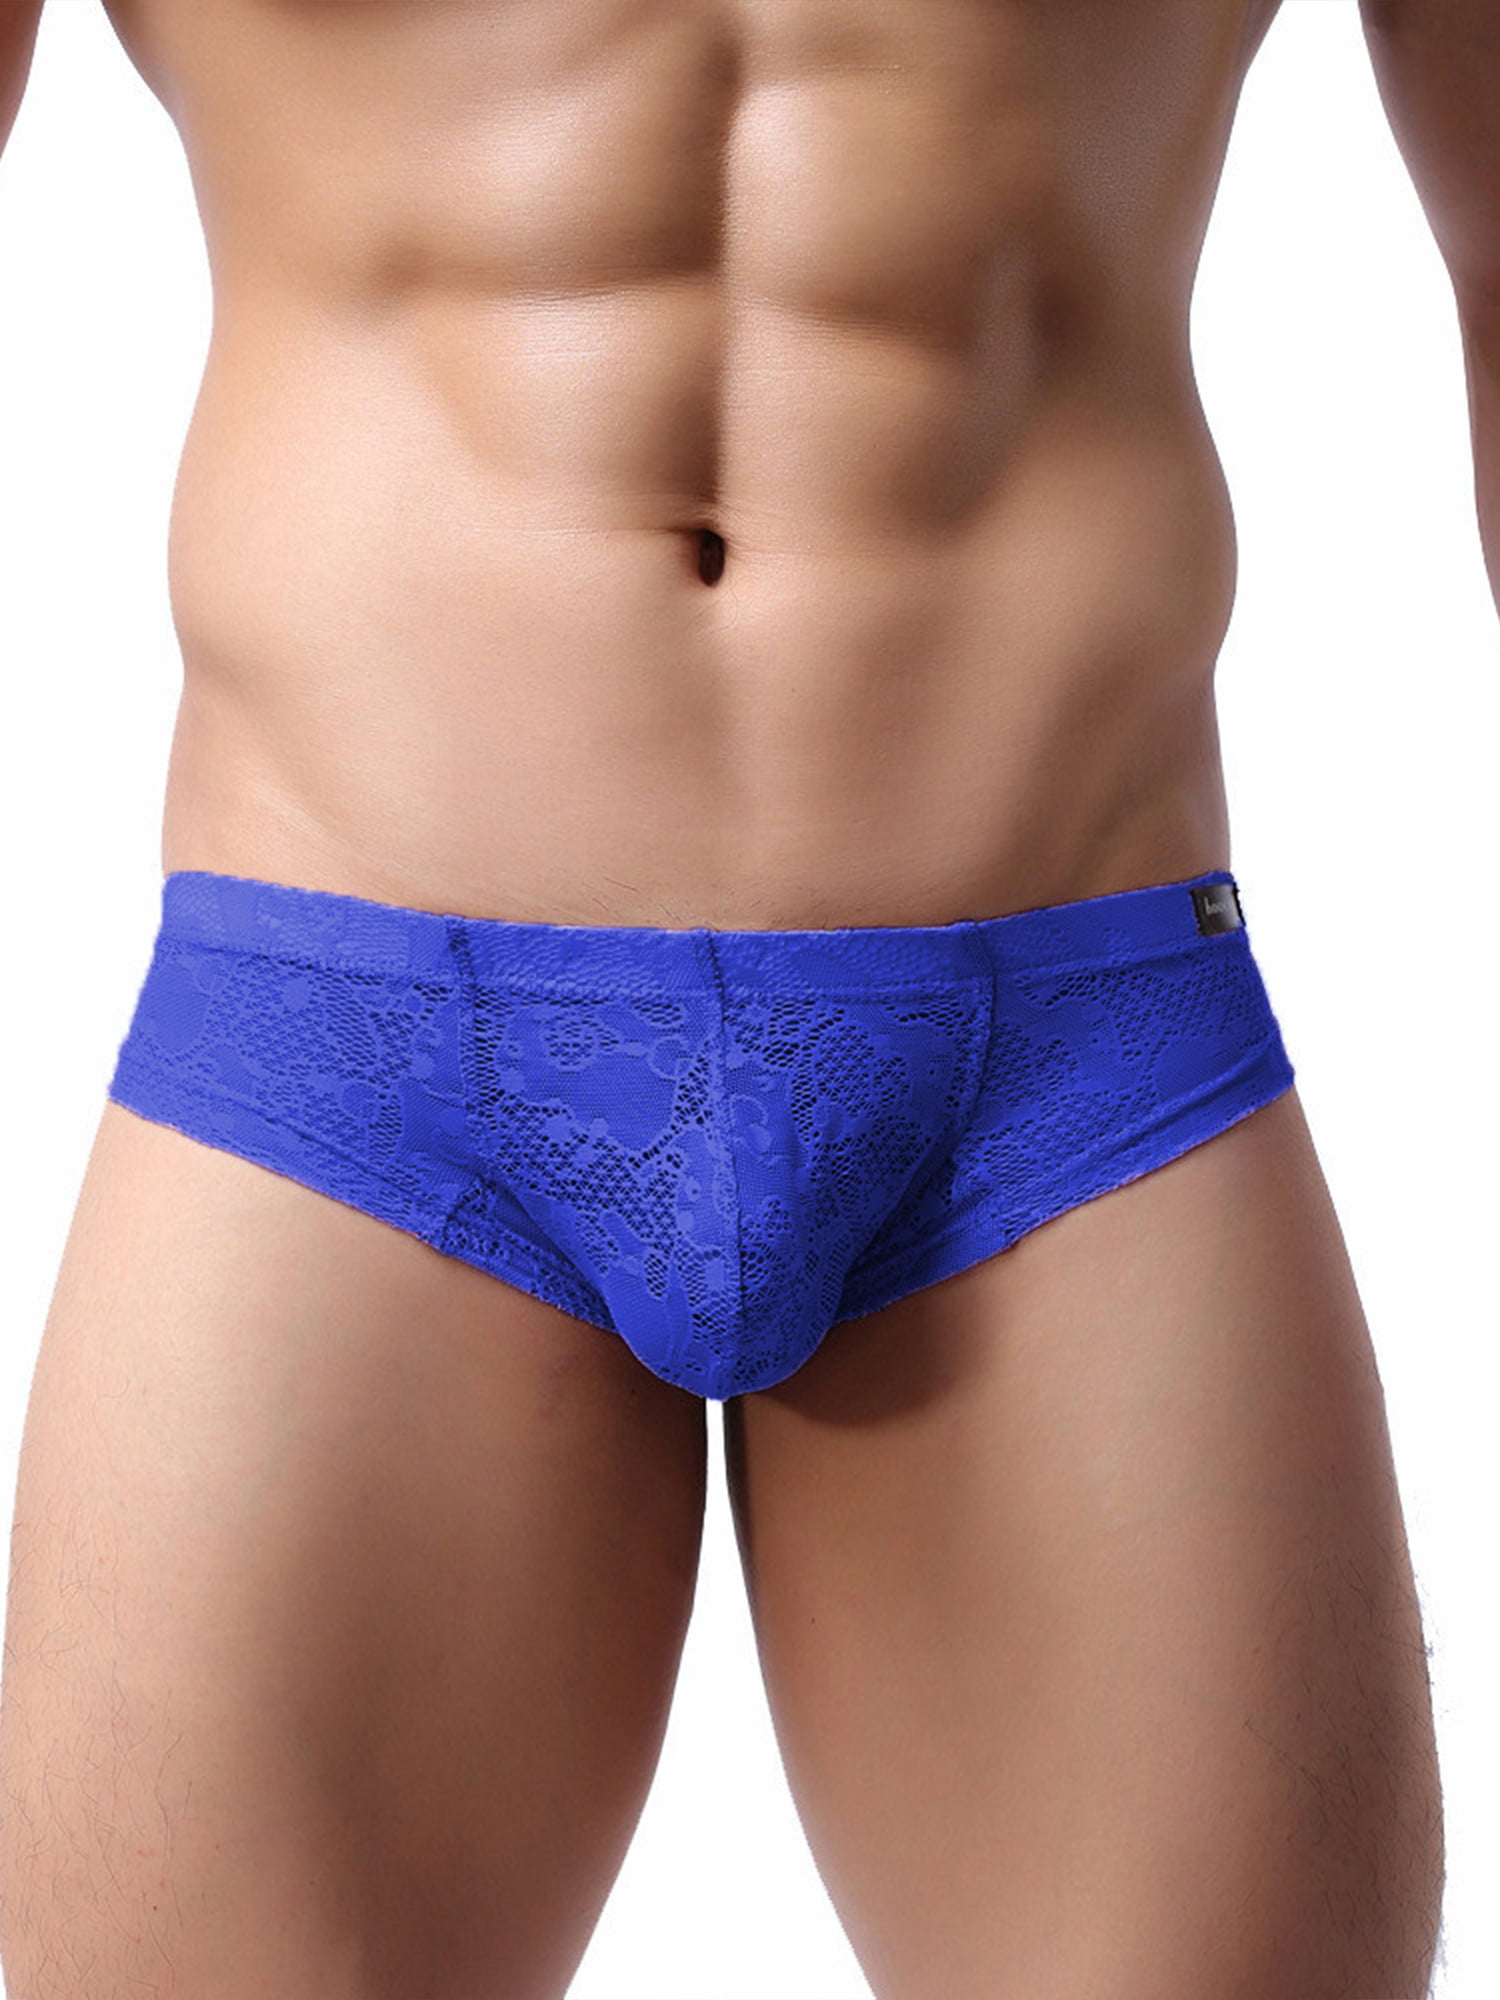 Ouneed Mens Low-Waisted Ventilation Men Underwear Briefs 